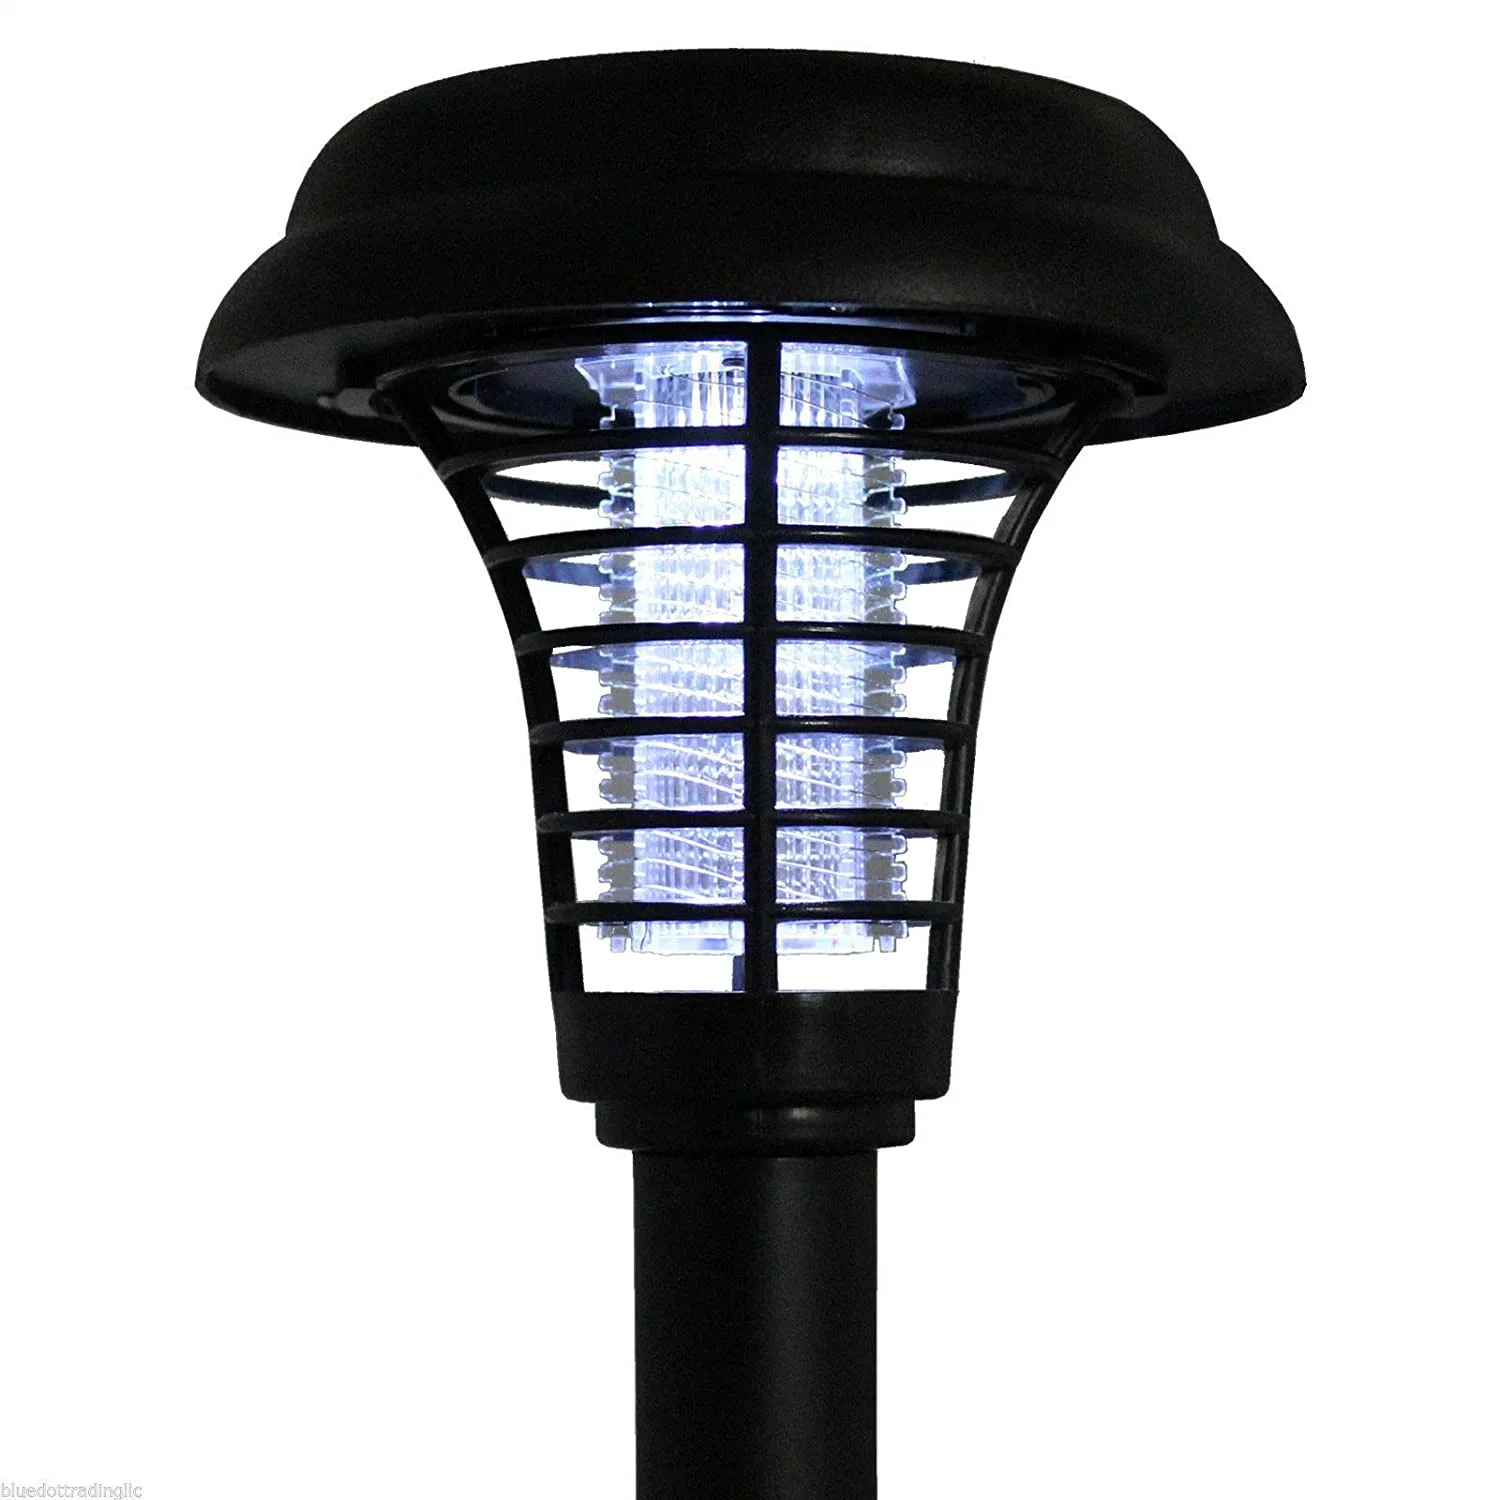 Mosquito Solar Killer LED de poupança de energia da luz solar ao ar livre no pátio do agregado Universal de aplicativo assassino de insetos Eletrônico